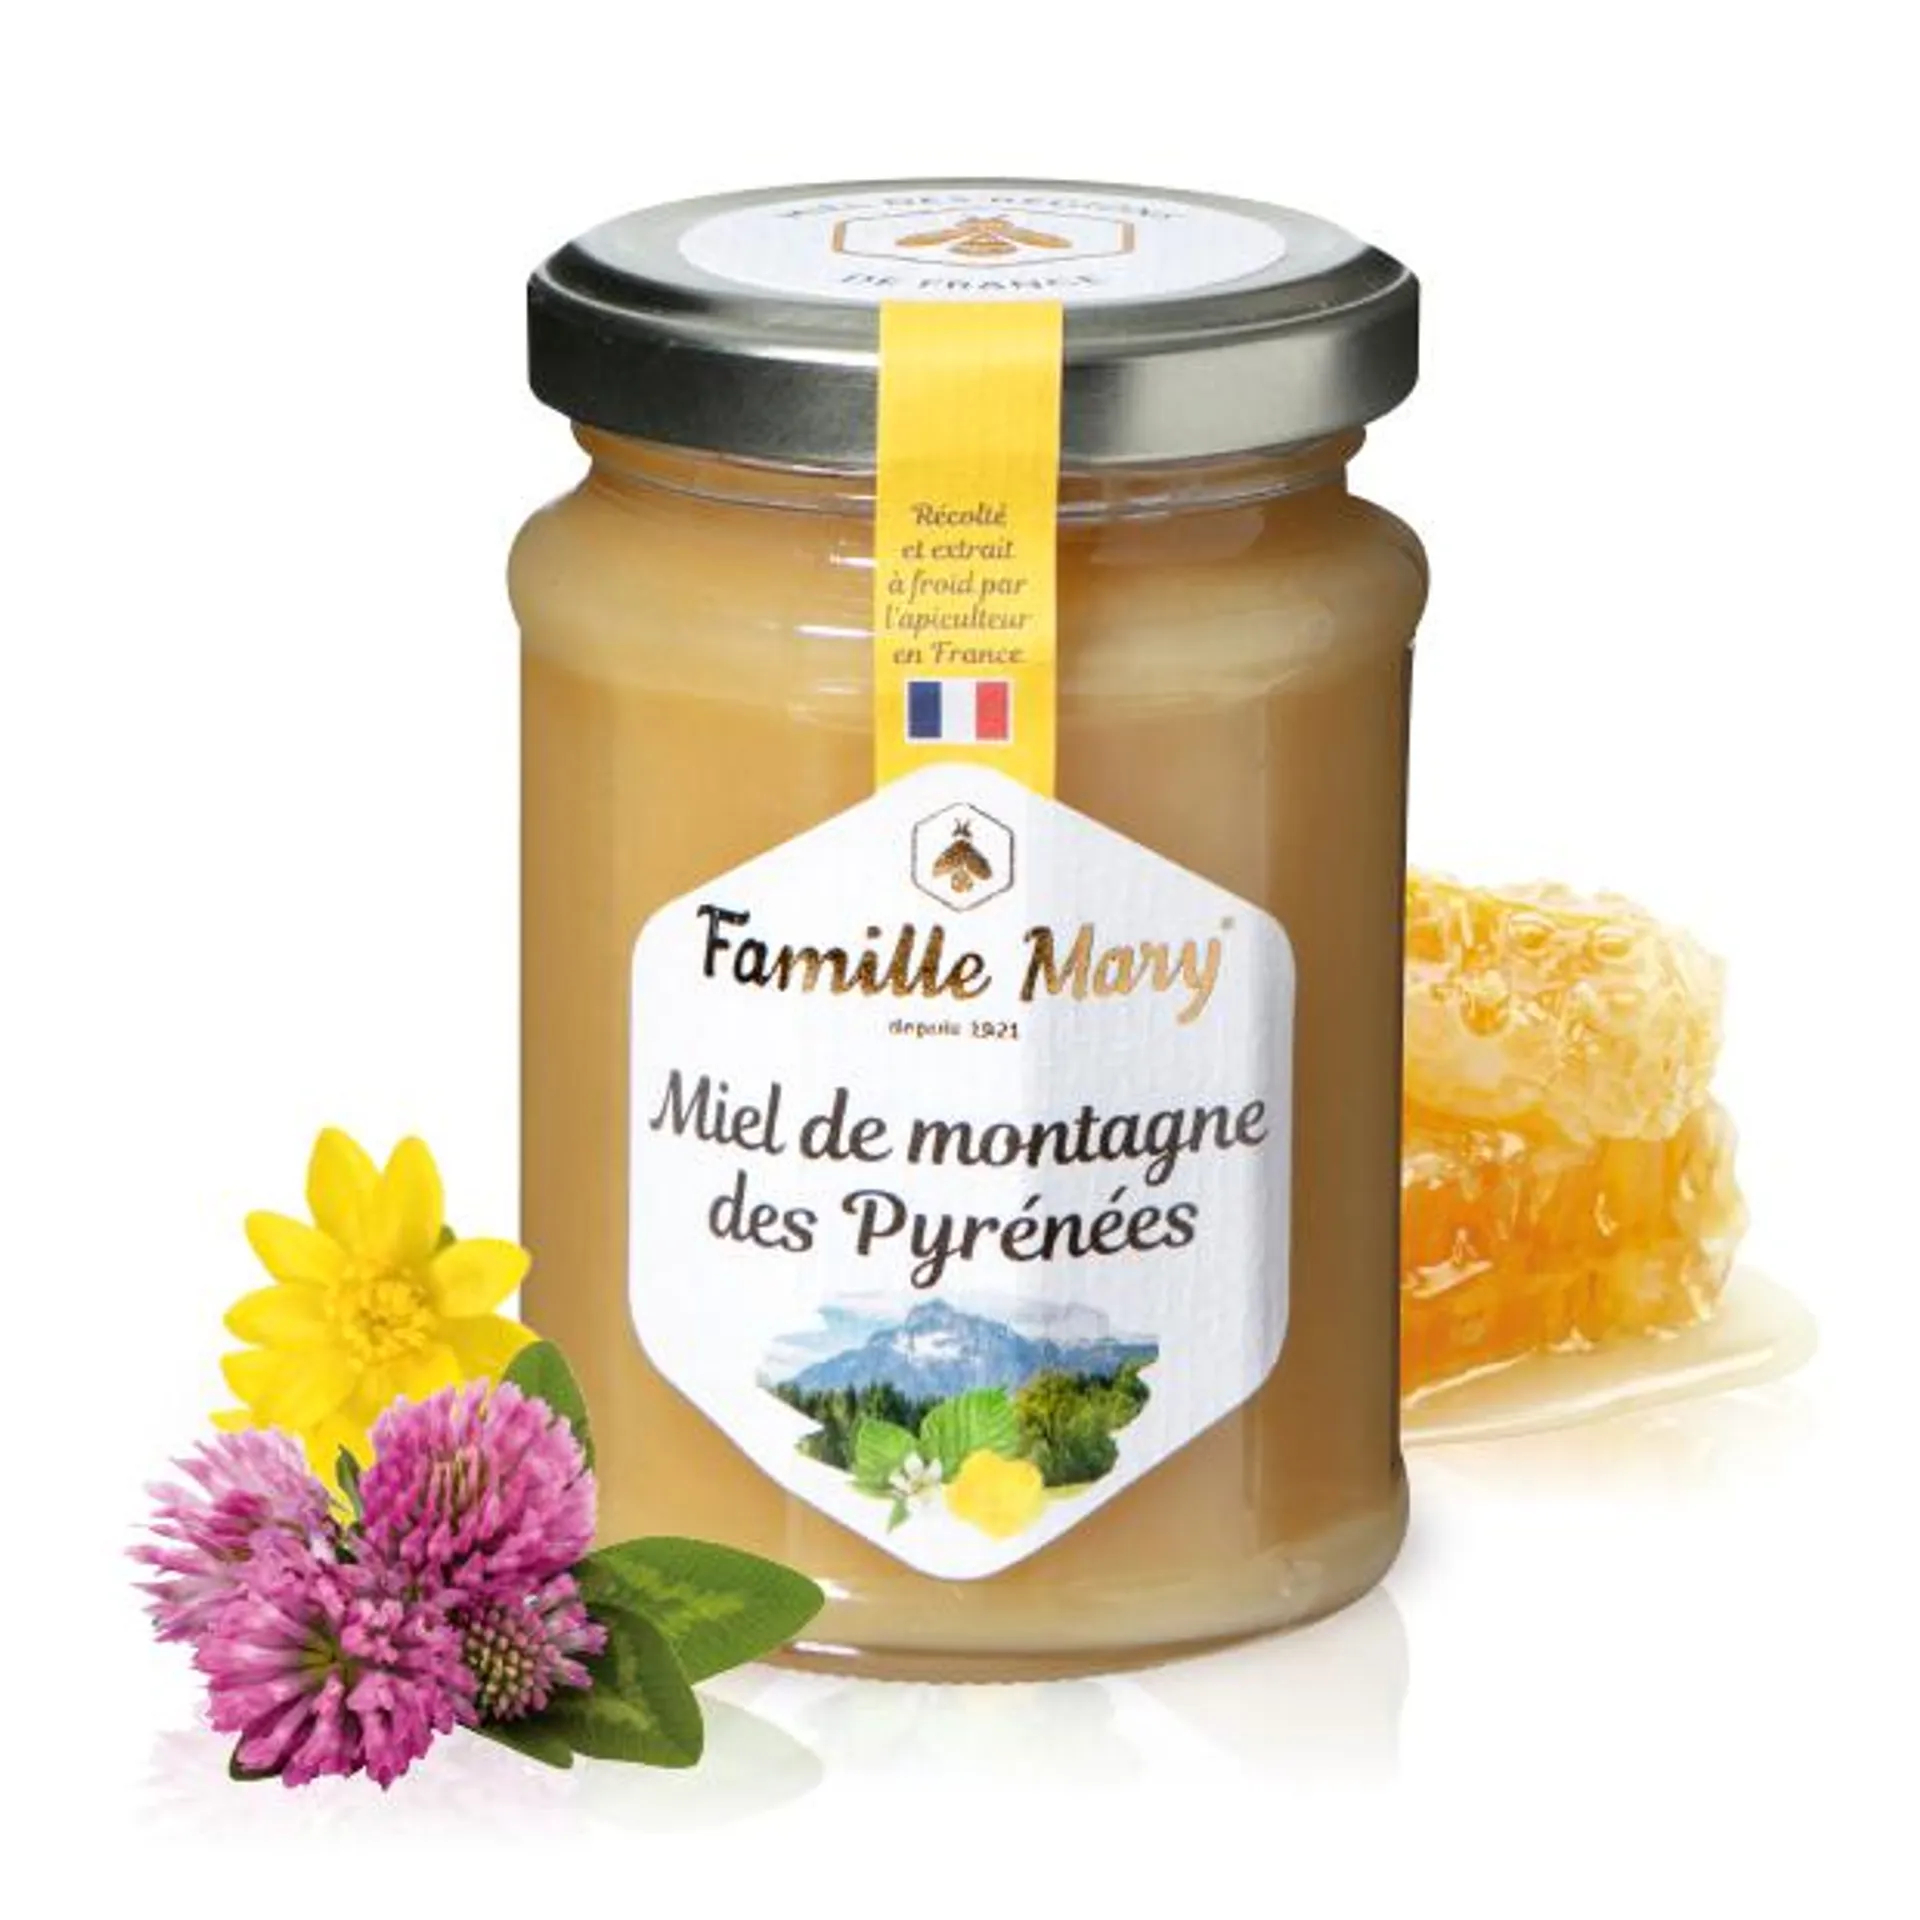 Miel de montagne des Pyrénées